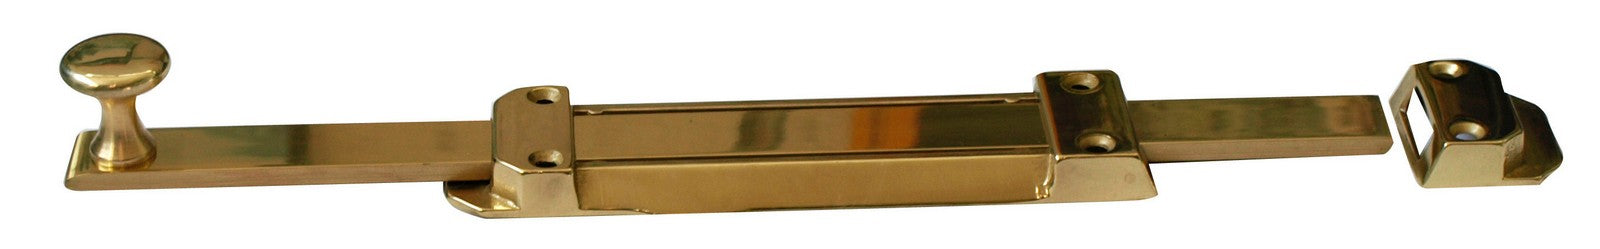 catenaccio ottone cromo satinato 300 mm cod:ferx.14742